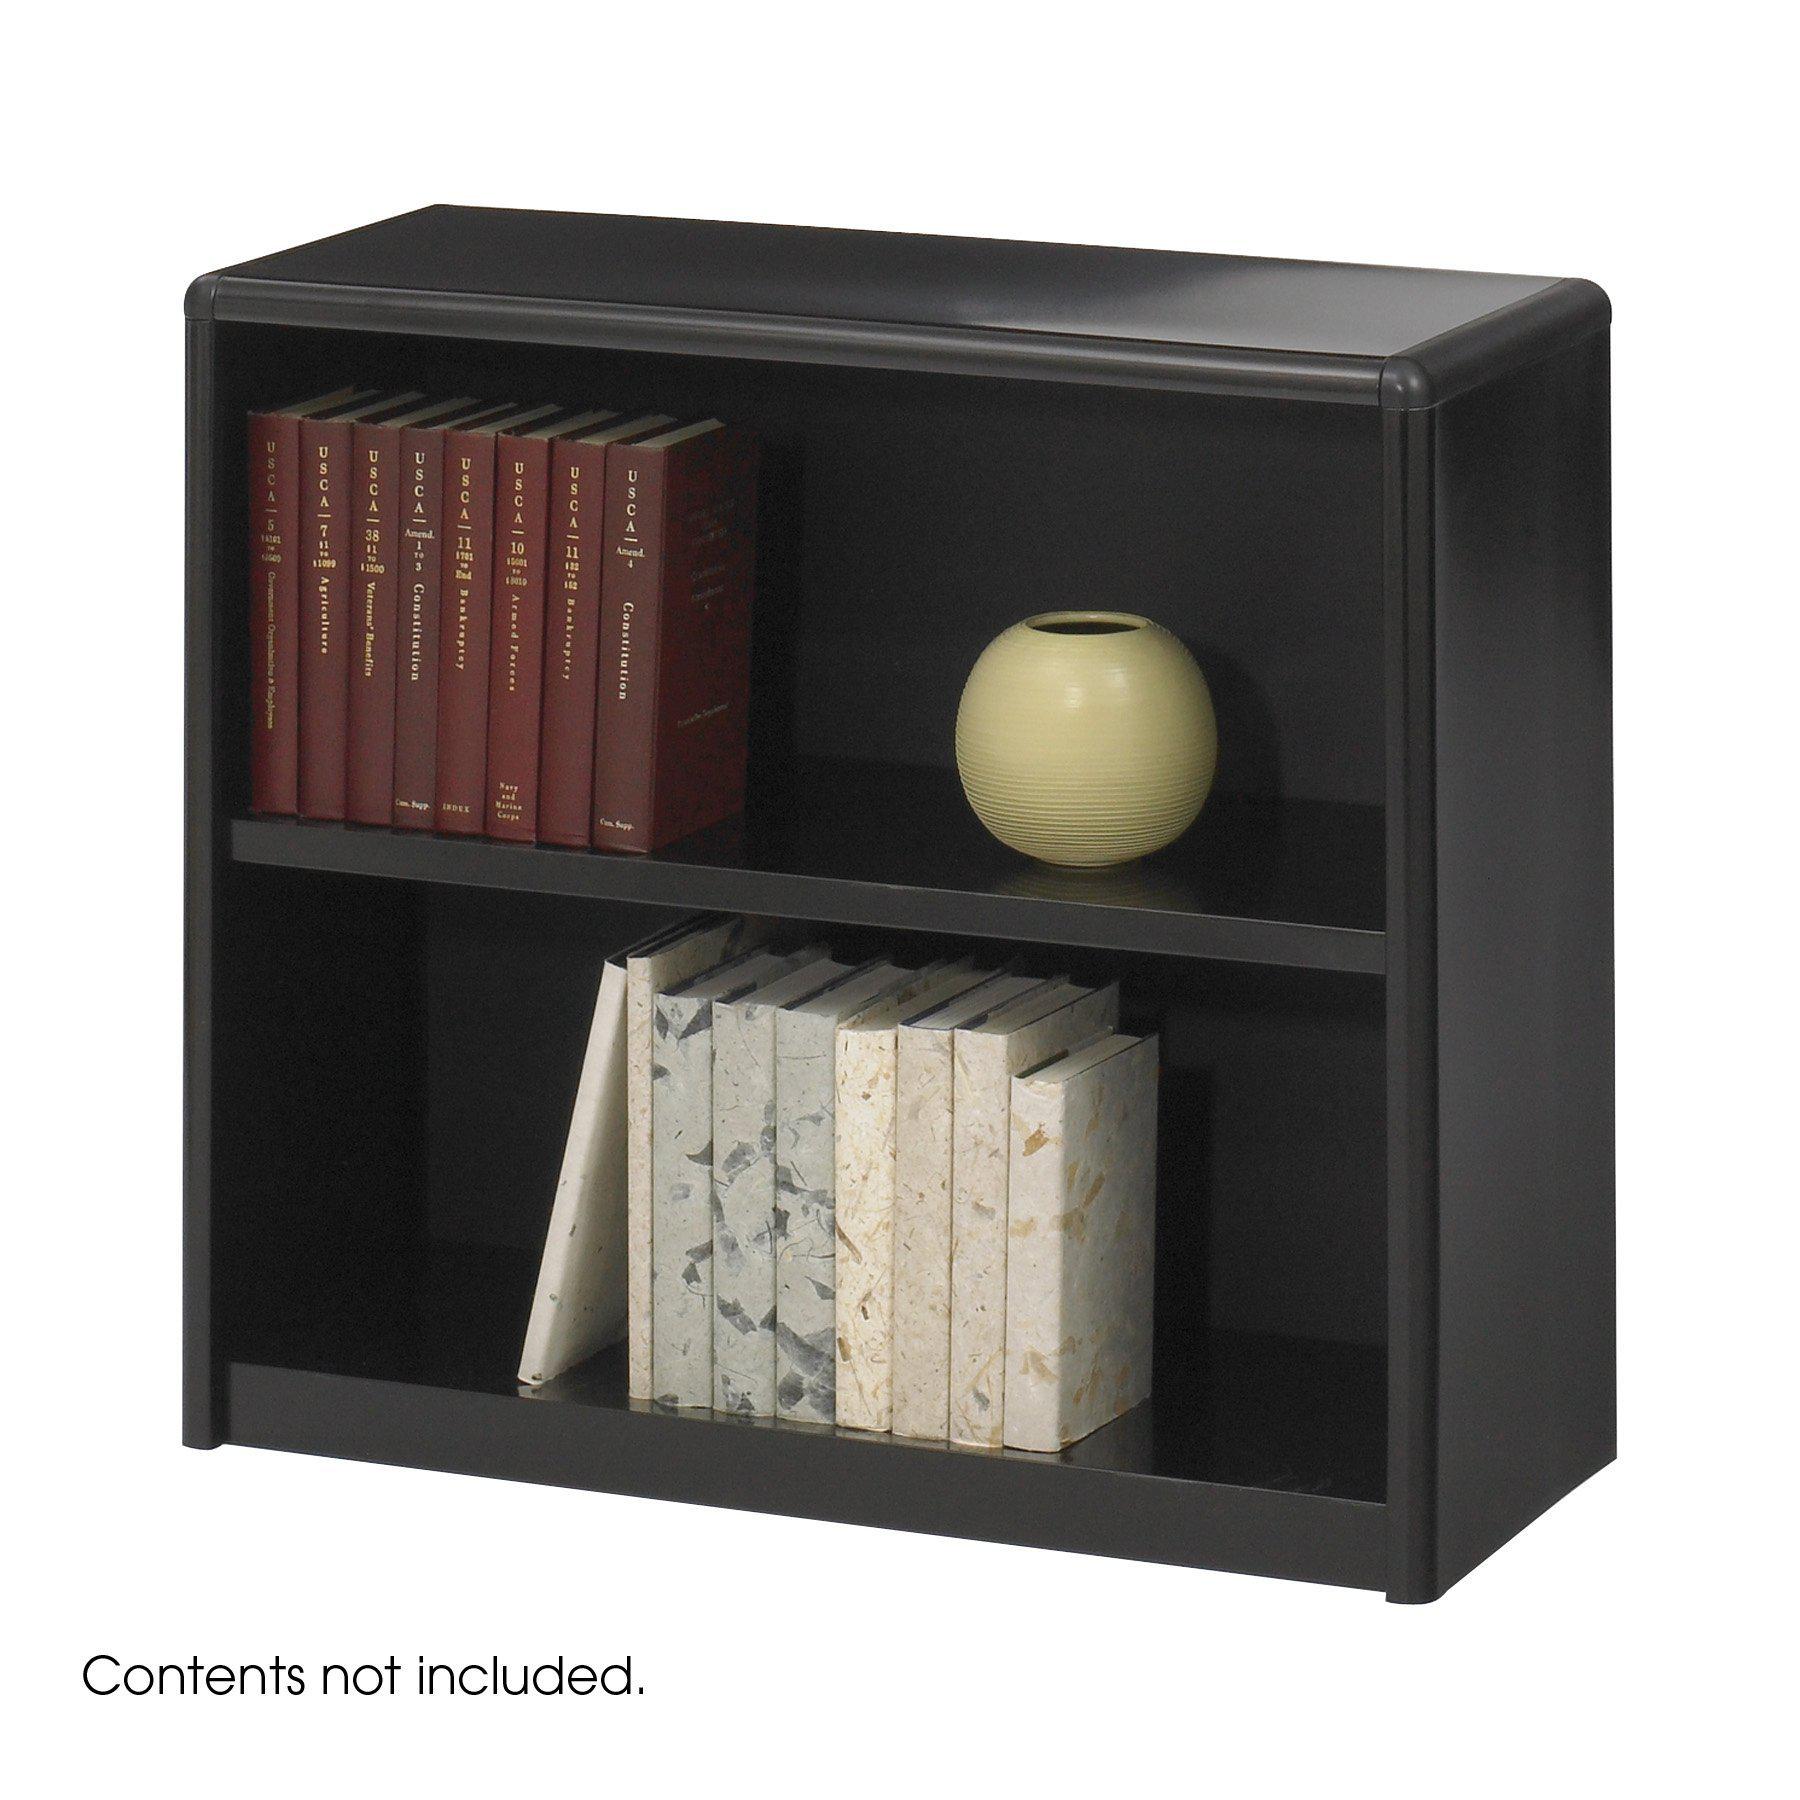  2-Shelf ValueMate® Economy Bookcase, Black